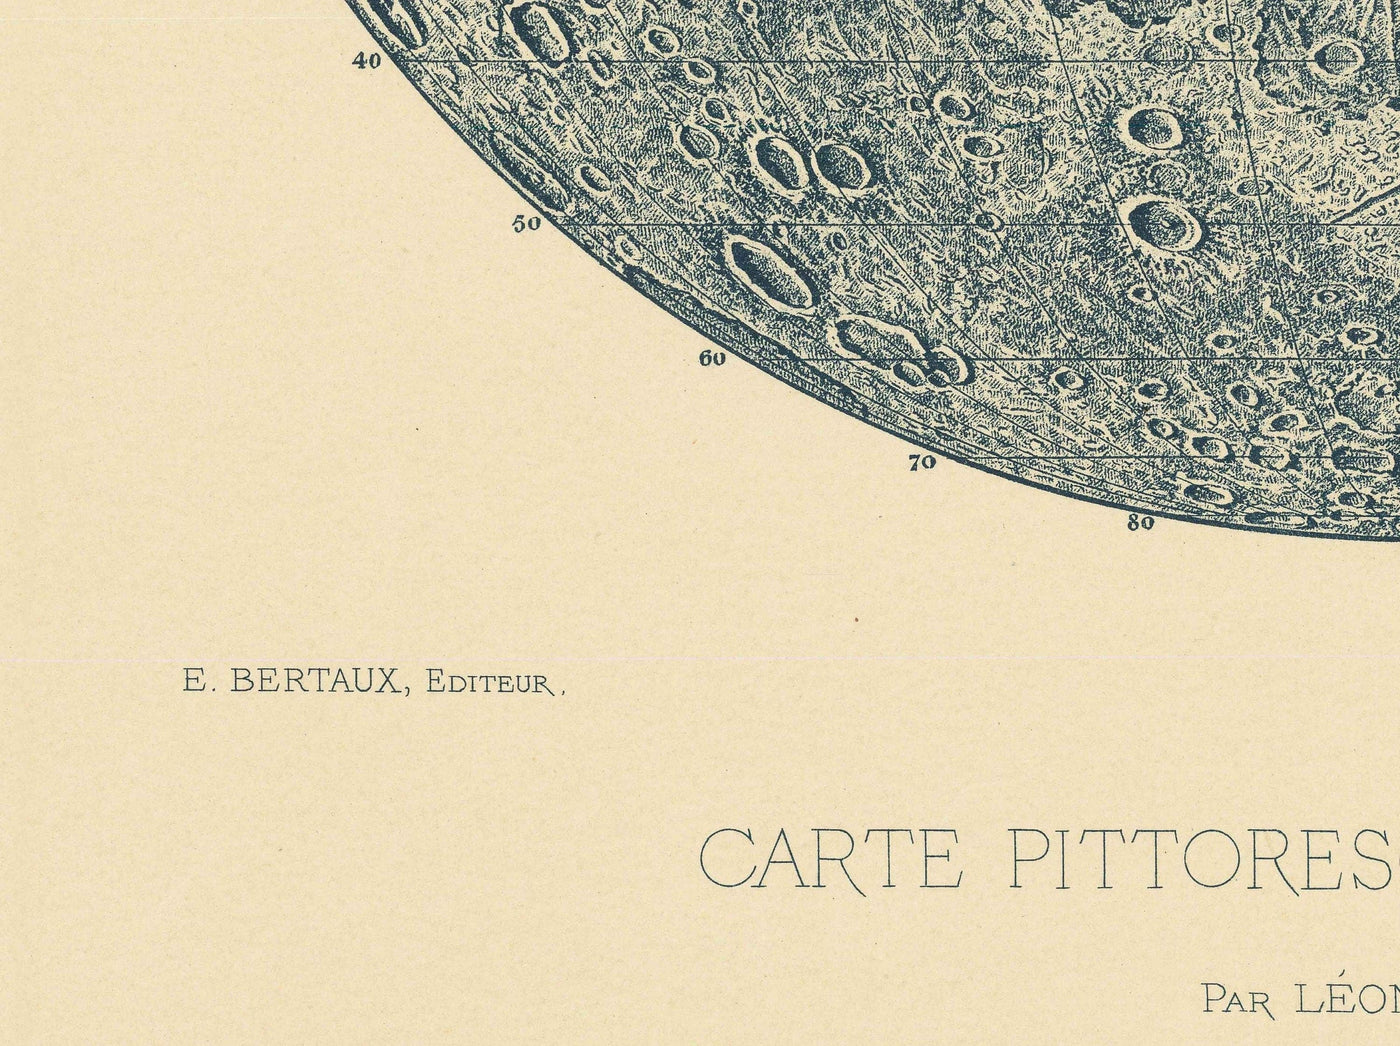 Ilustración de la Luna Vieja, 1888 por Leon Fenet - Litografía francesa de la carta lunar